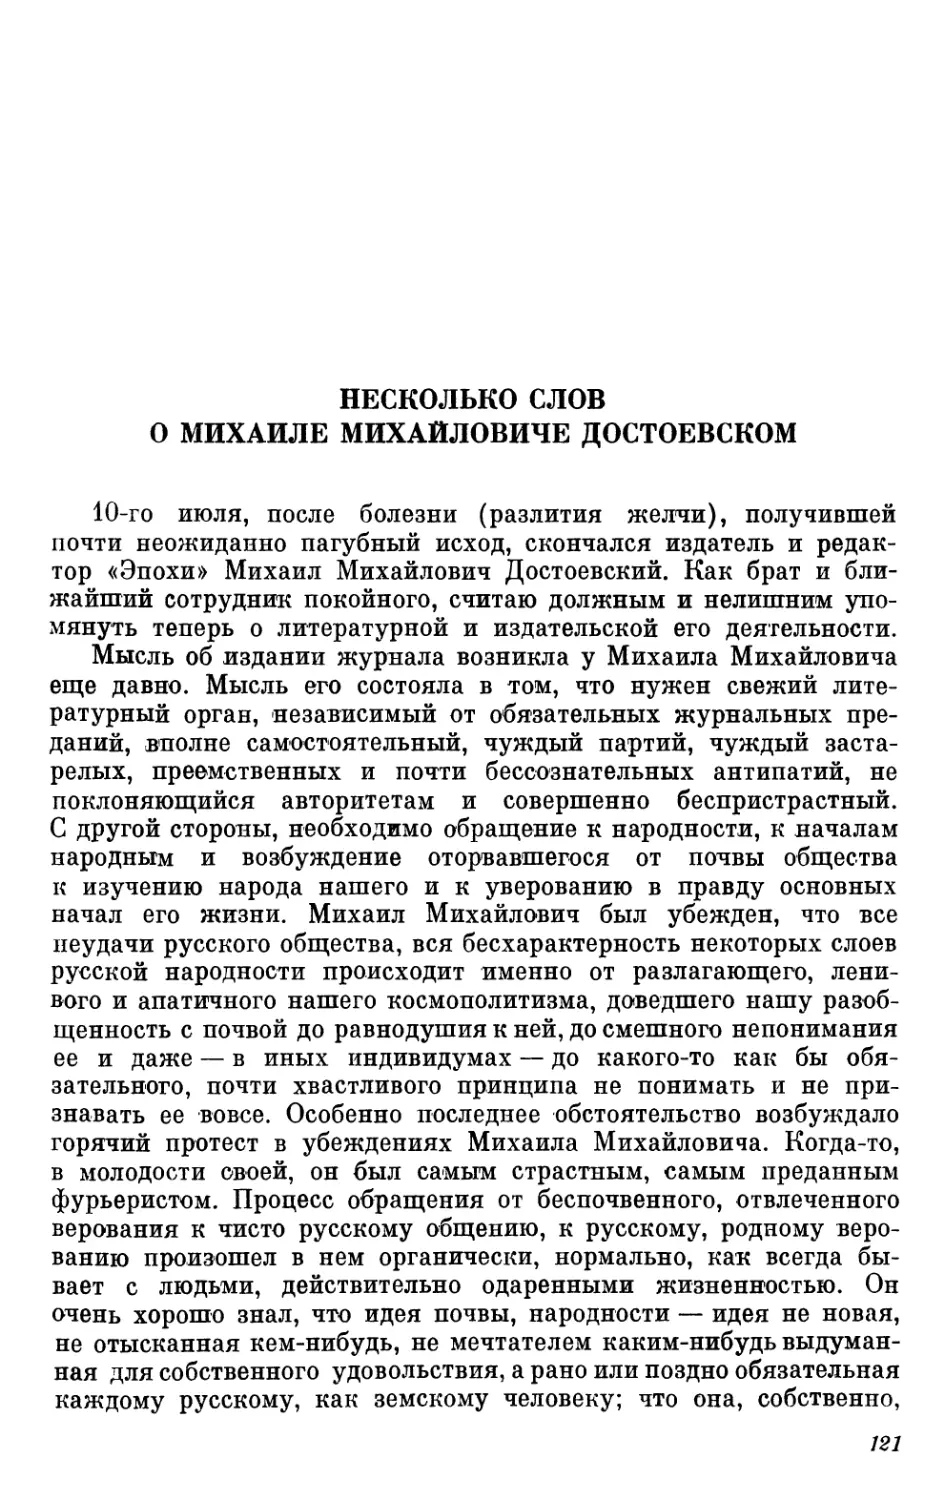 Несколько слов о Михаиле Михайловиче Достоевском